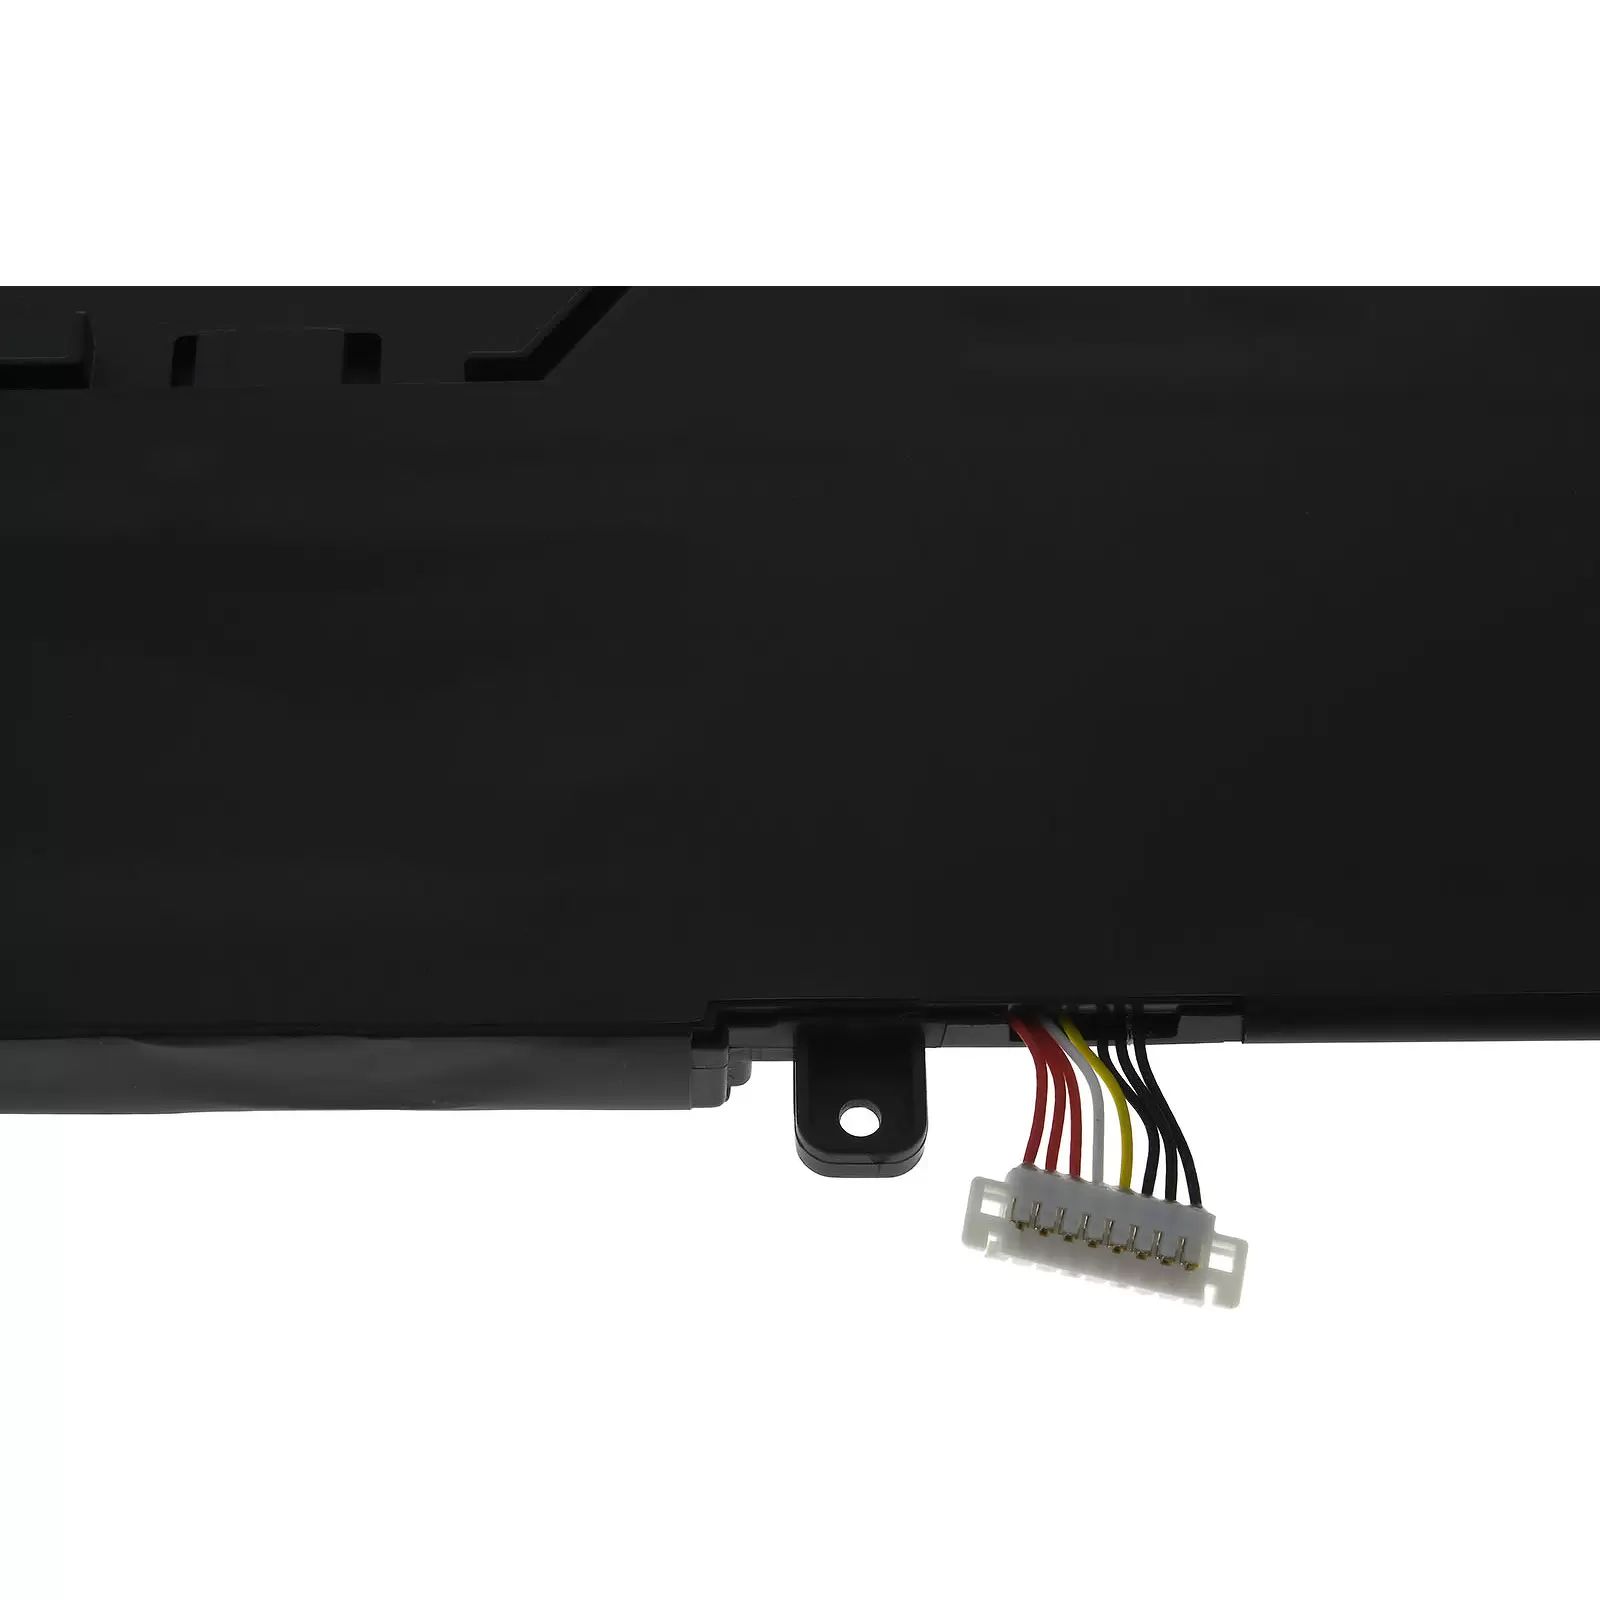 Akku für Laptop Asus ZenBook Pro 15 UX580GE-E2032T / Typ C42N1728 - 15,4V - 4400 mAh